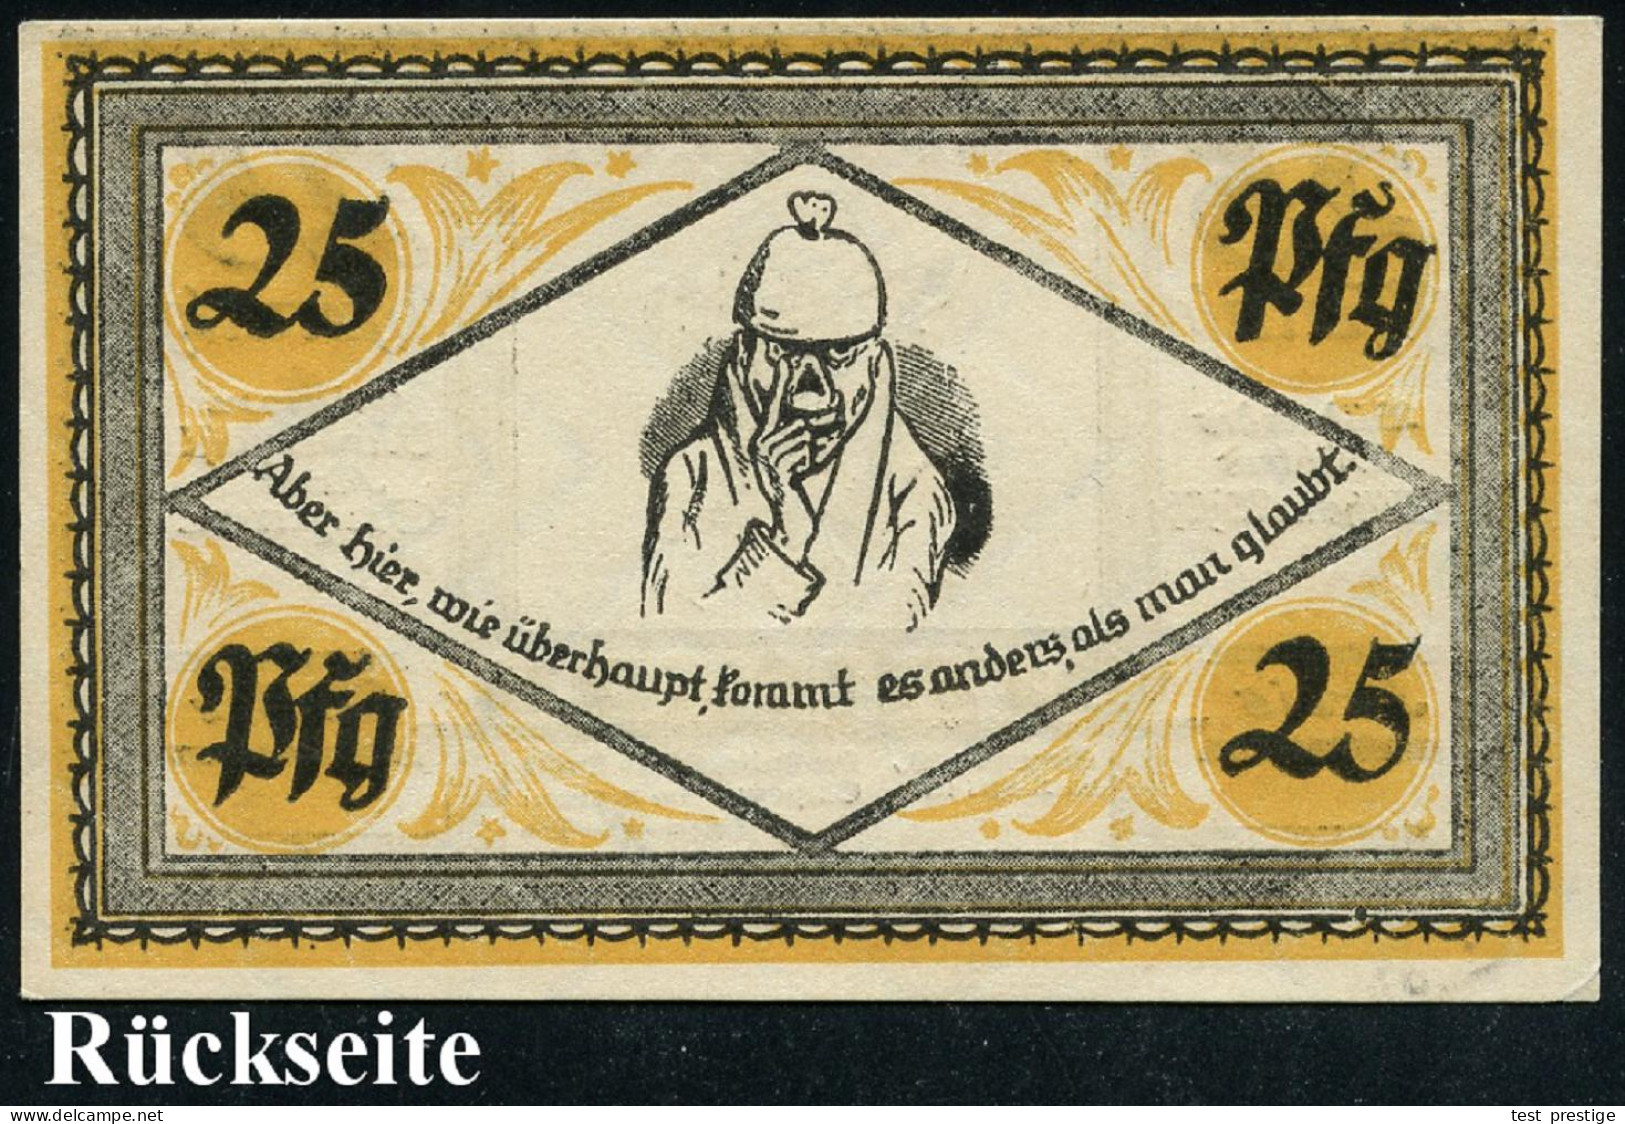 Stolzenau 1921 (Apr.) Infla-Notgeldschein 25 Pf. Mit Portrait Von Wilh. Busch (Selbstportrait Etc.) Bankfrisch - DEUTSCH - Schrijvers